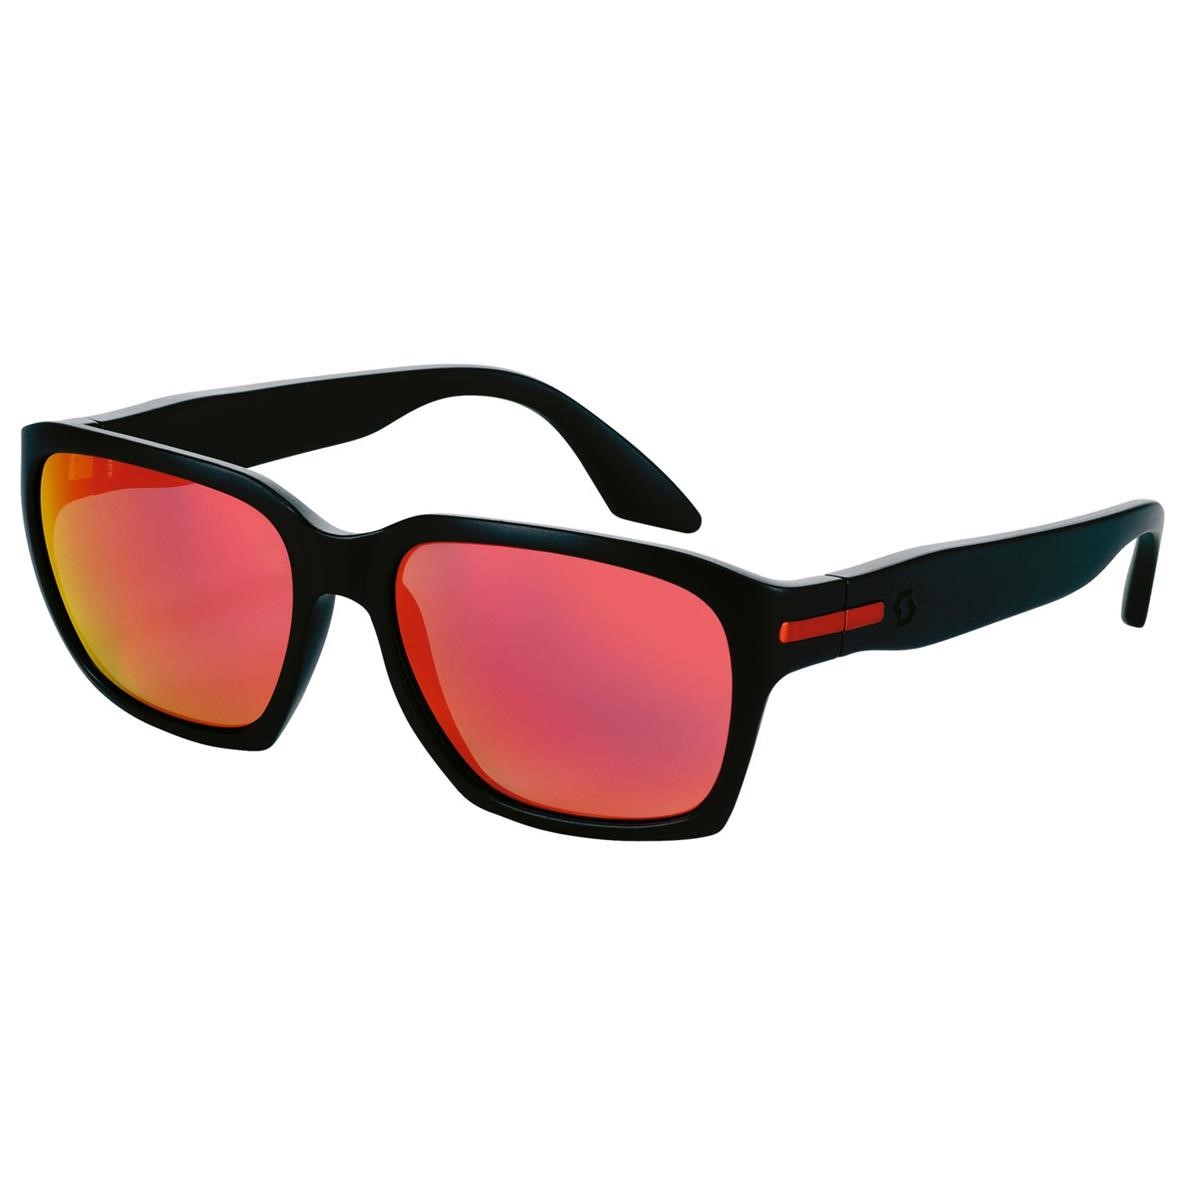 Scott Sunglasses C-Note Black Matt/Red Chrome